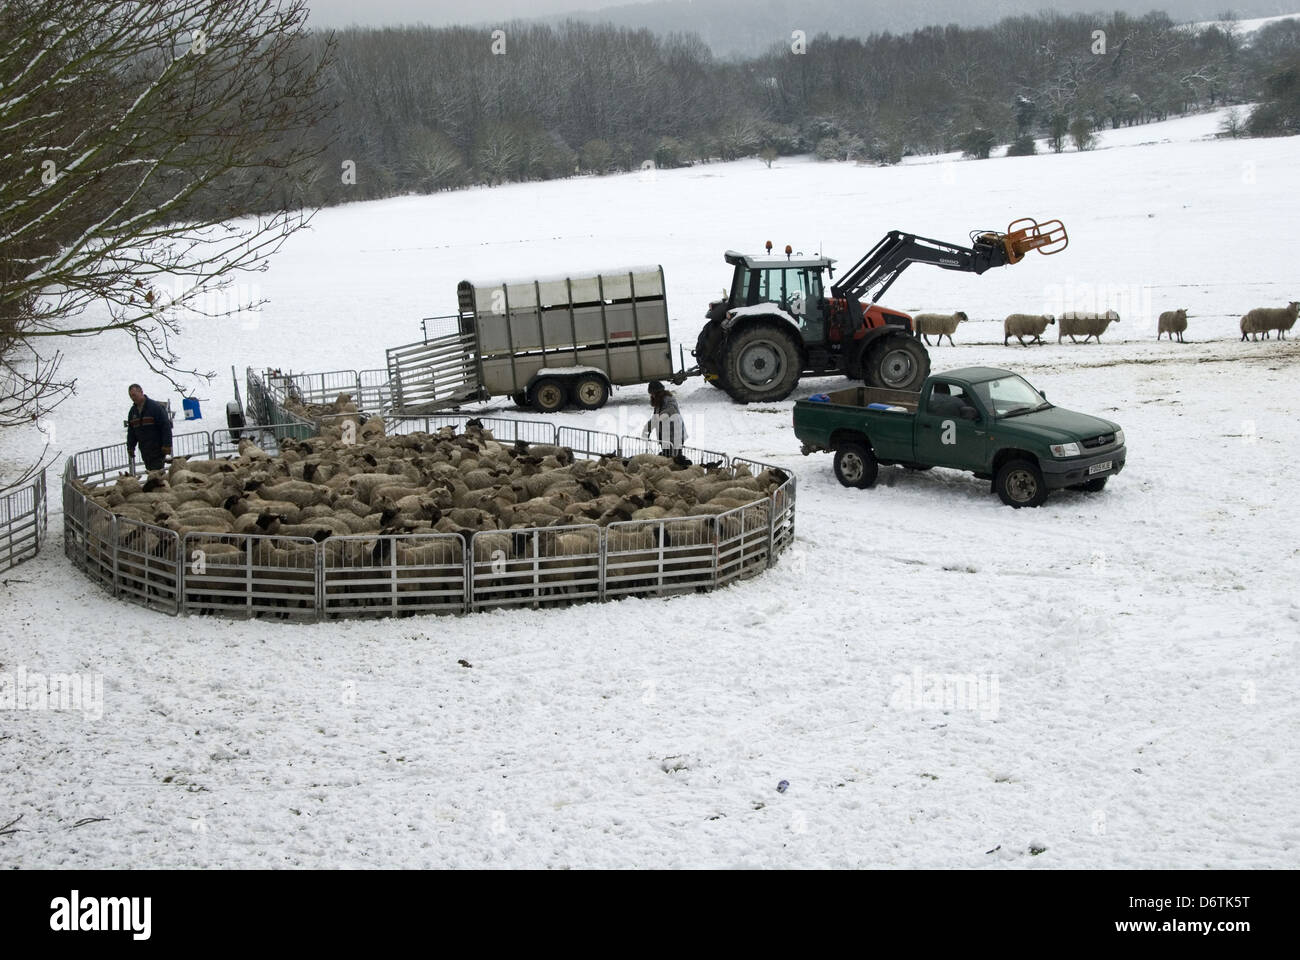 L'élevage de moutons en troupeau de penning agriculteurs prêts pour la neige pour le marché de tri worming Wendover Buckinghamshire Angleterre Janvier Banque D'Images